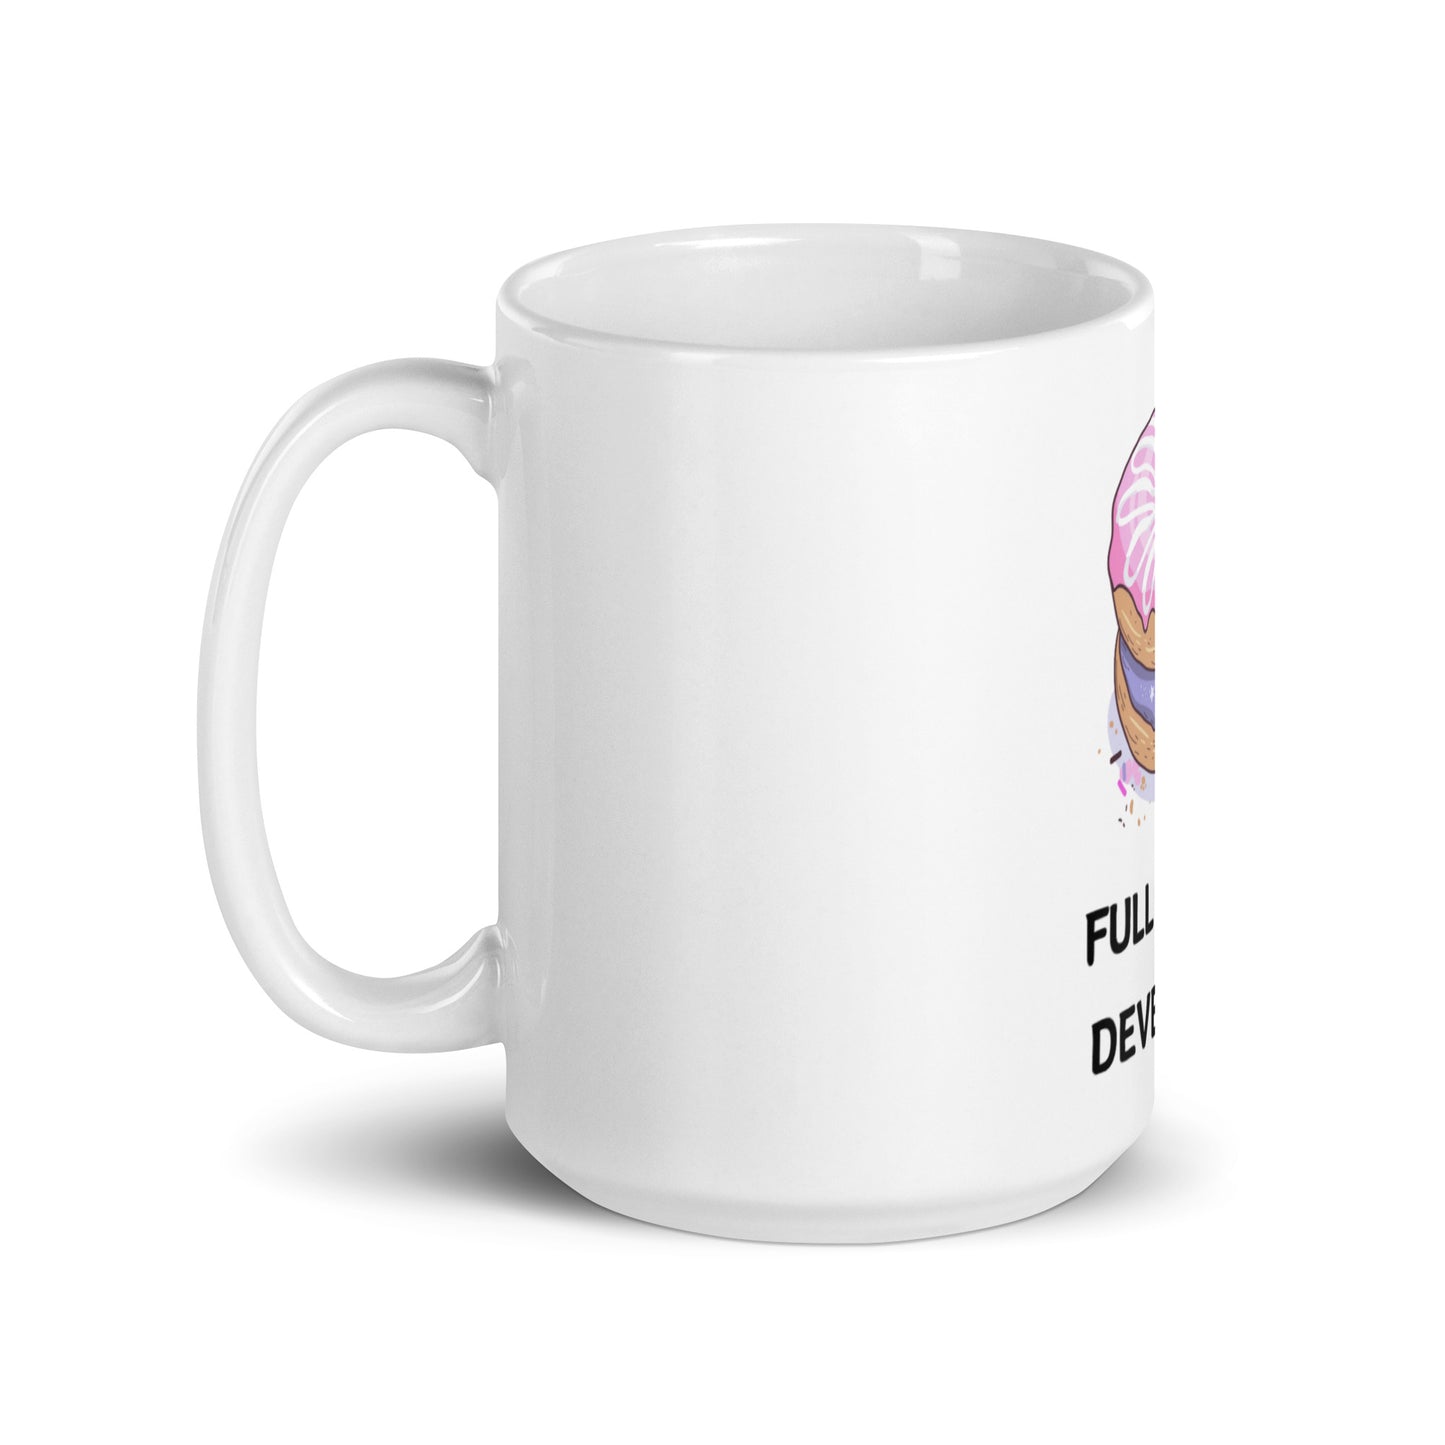 Full Snack mug